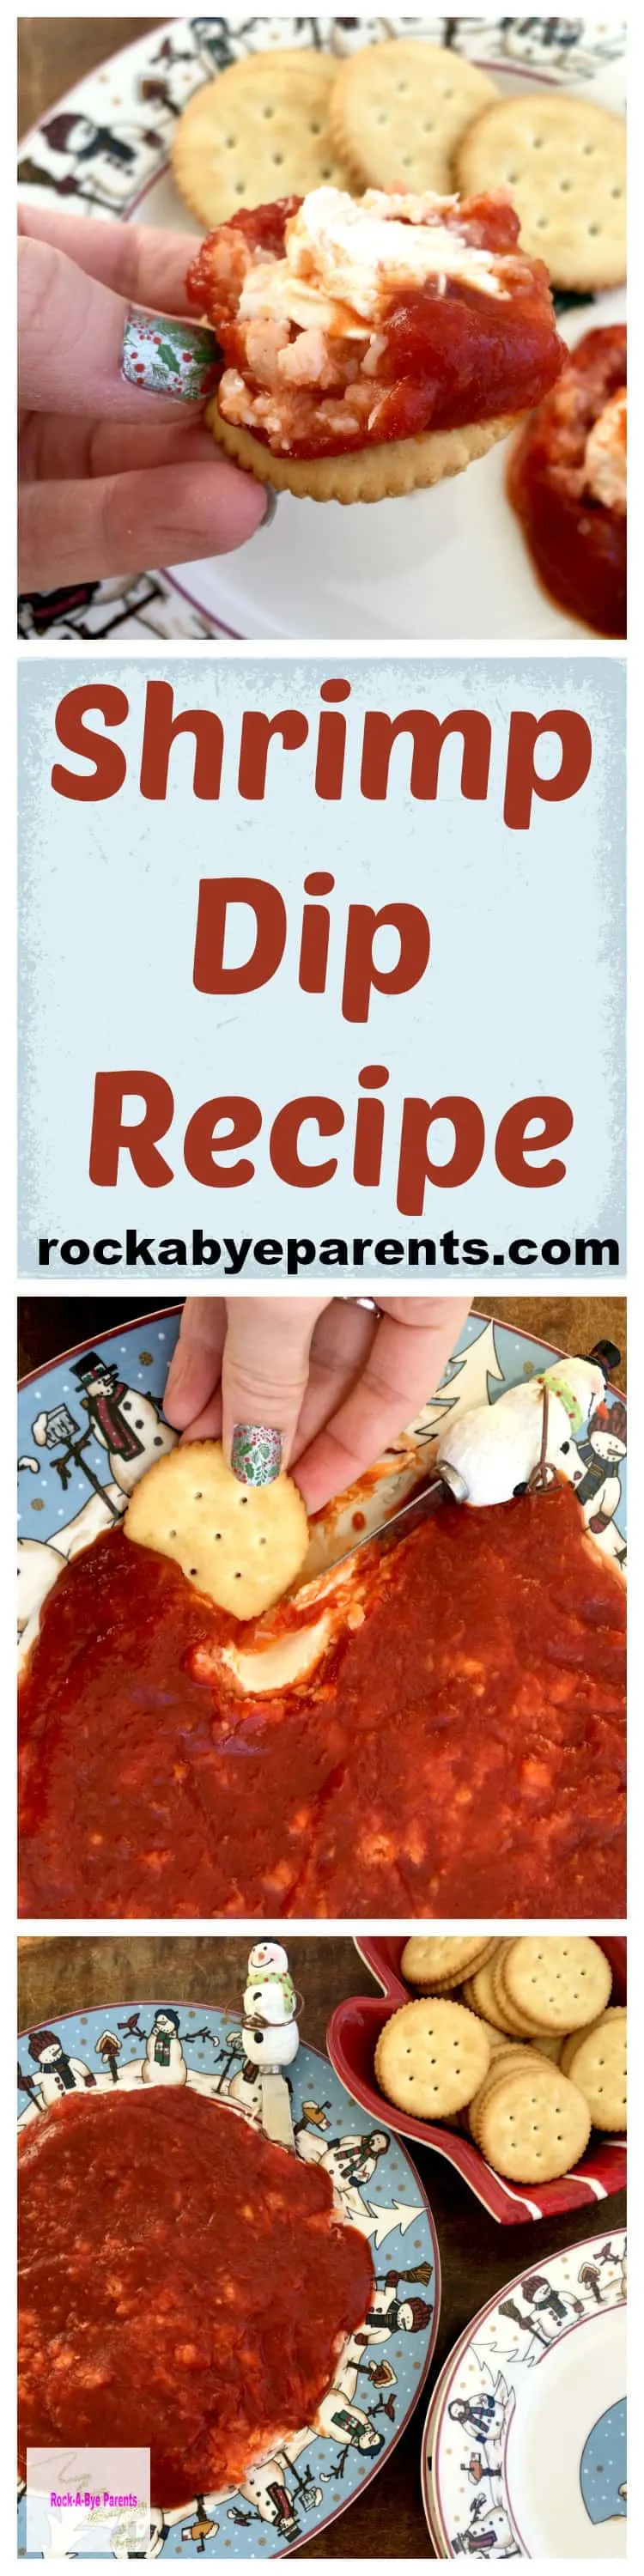 Shrimp Dip Recipe: An Easy, Go-To, Appetizer - rockabyeparents.com